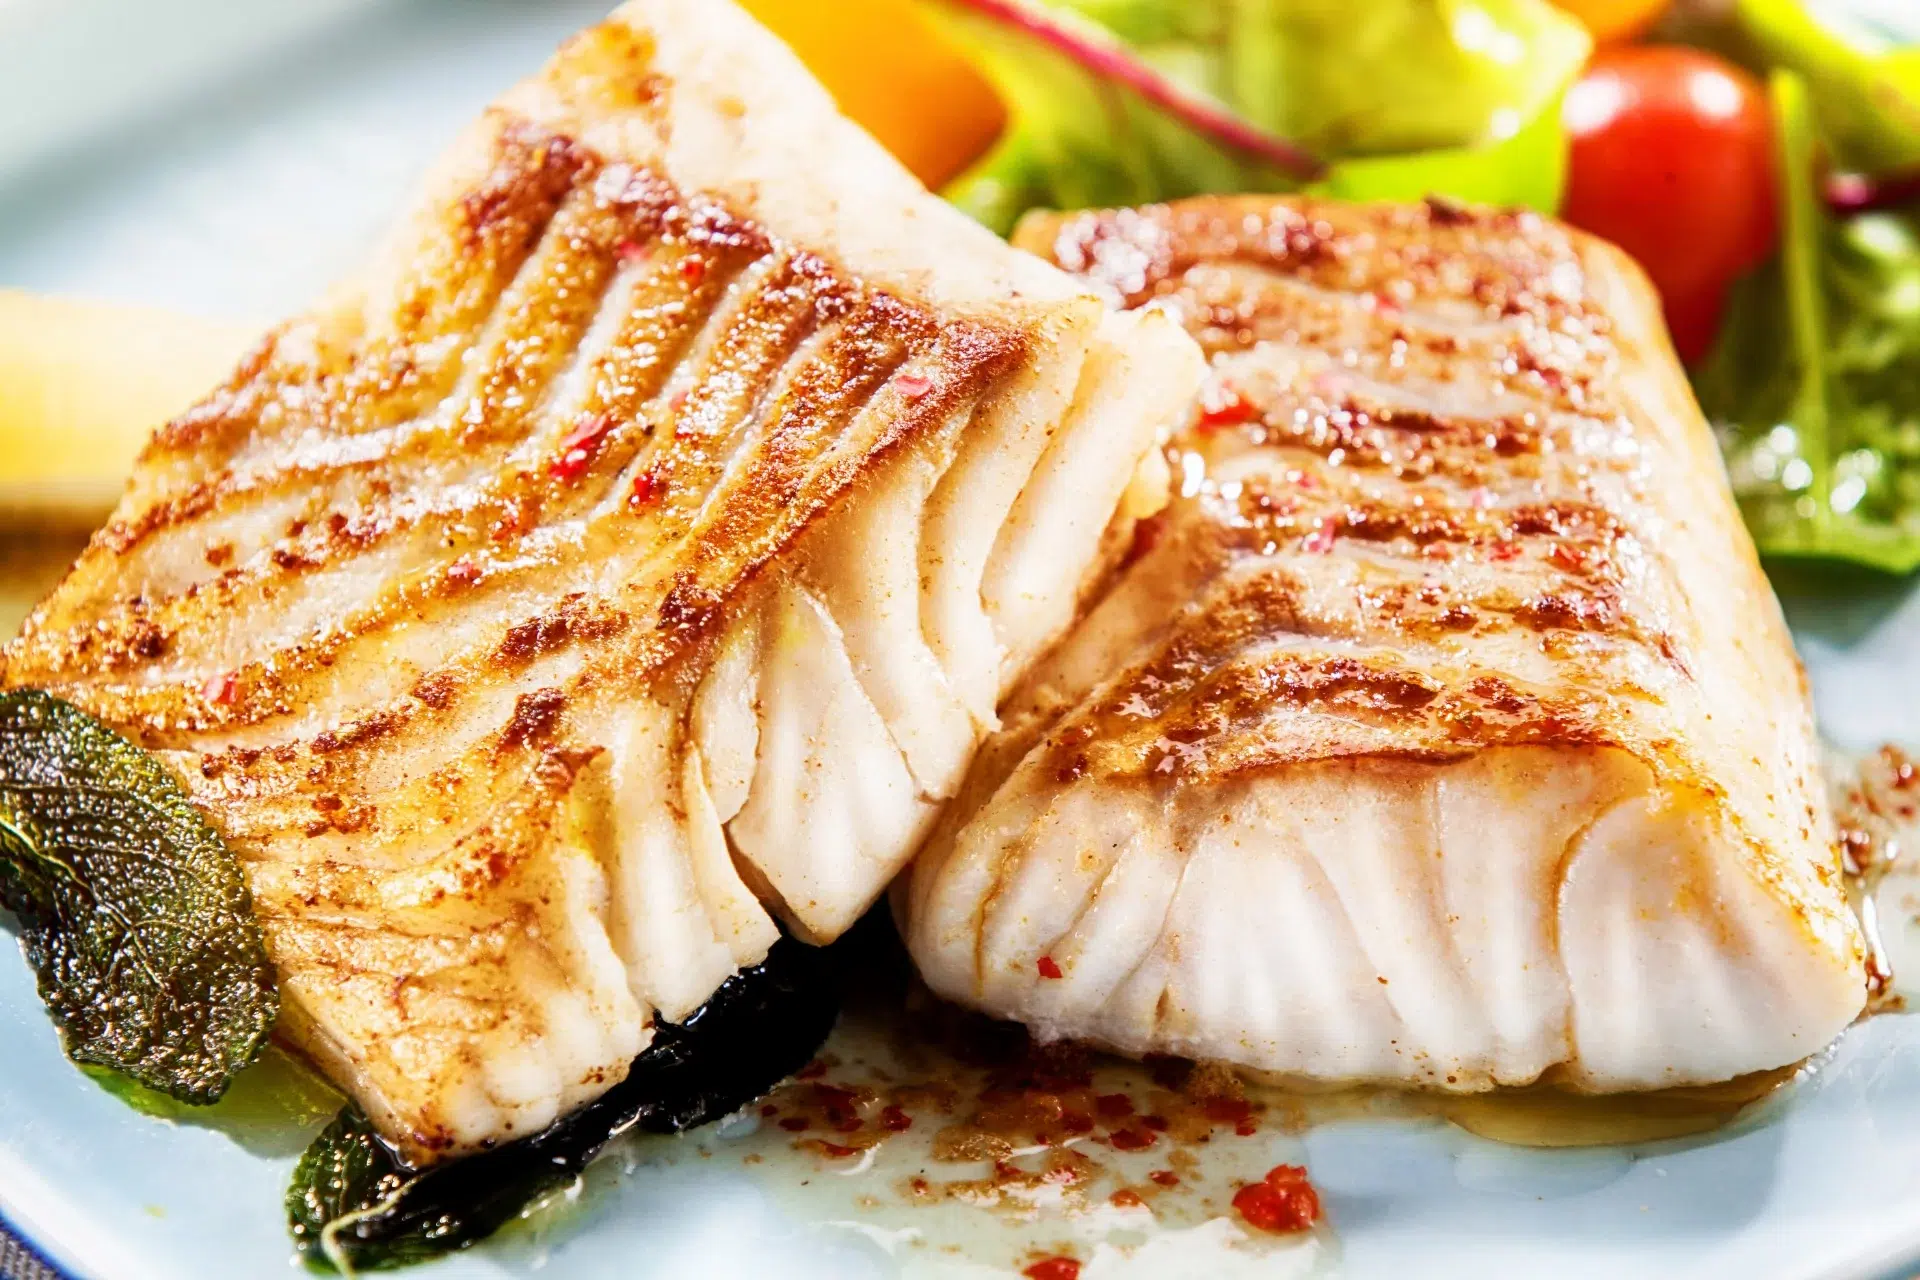 Alimentos ricos em ômega 3 incluem peixes gordurosos (como salmão, atum e sardinha), sementes de linhaça, chia e nozes.